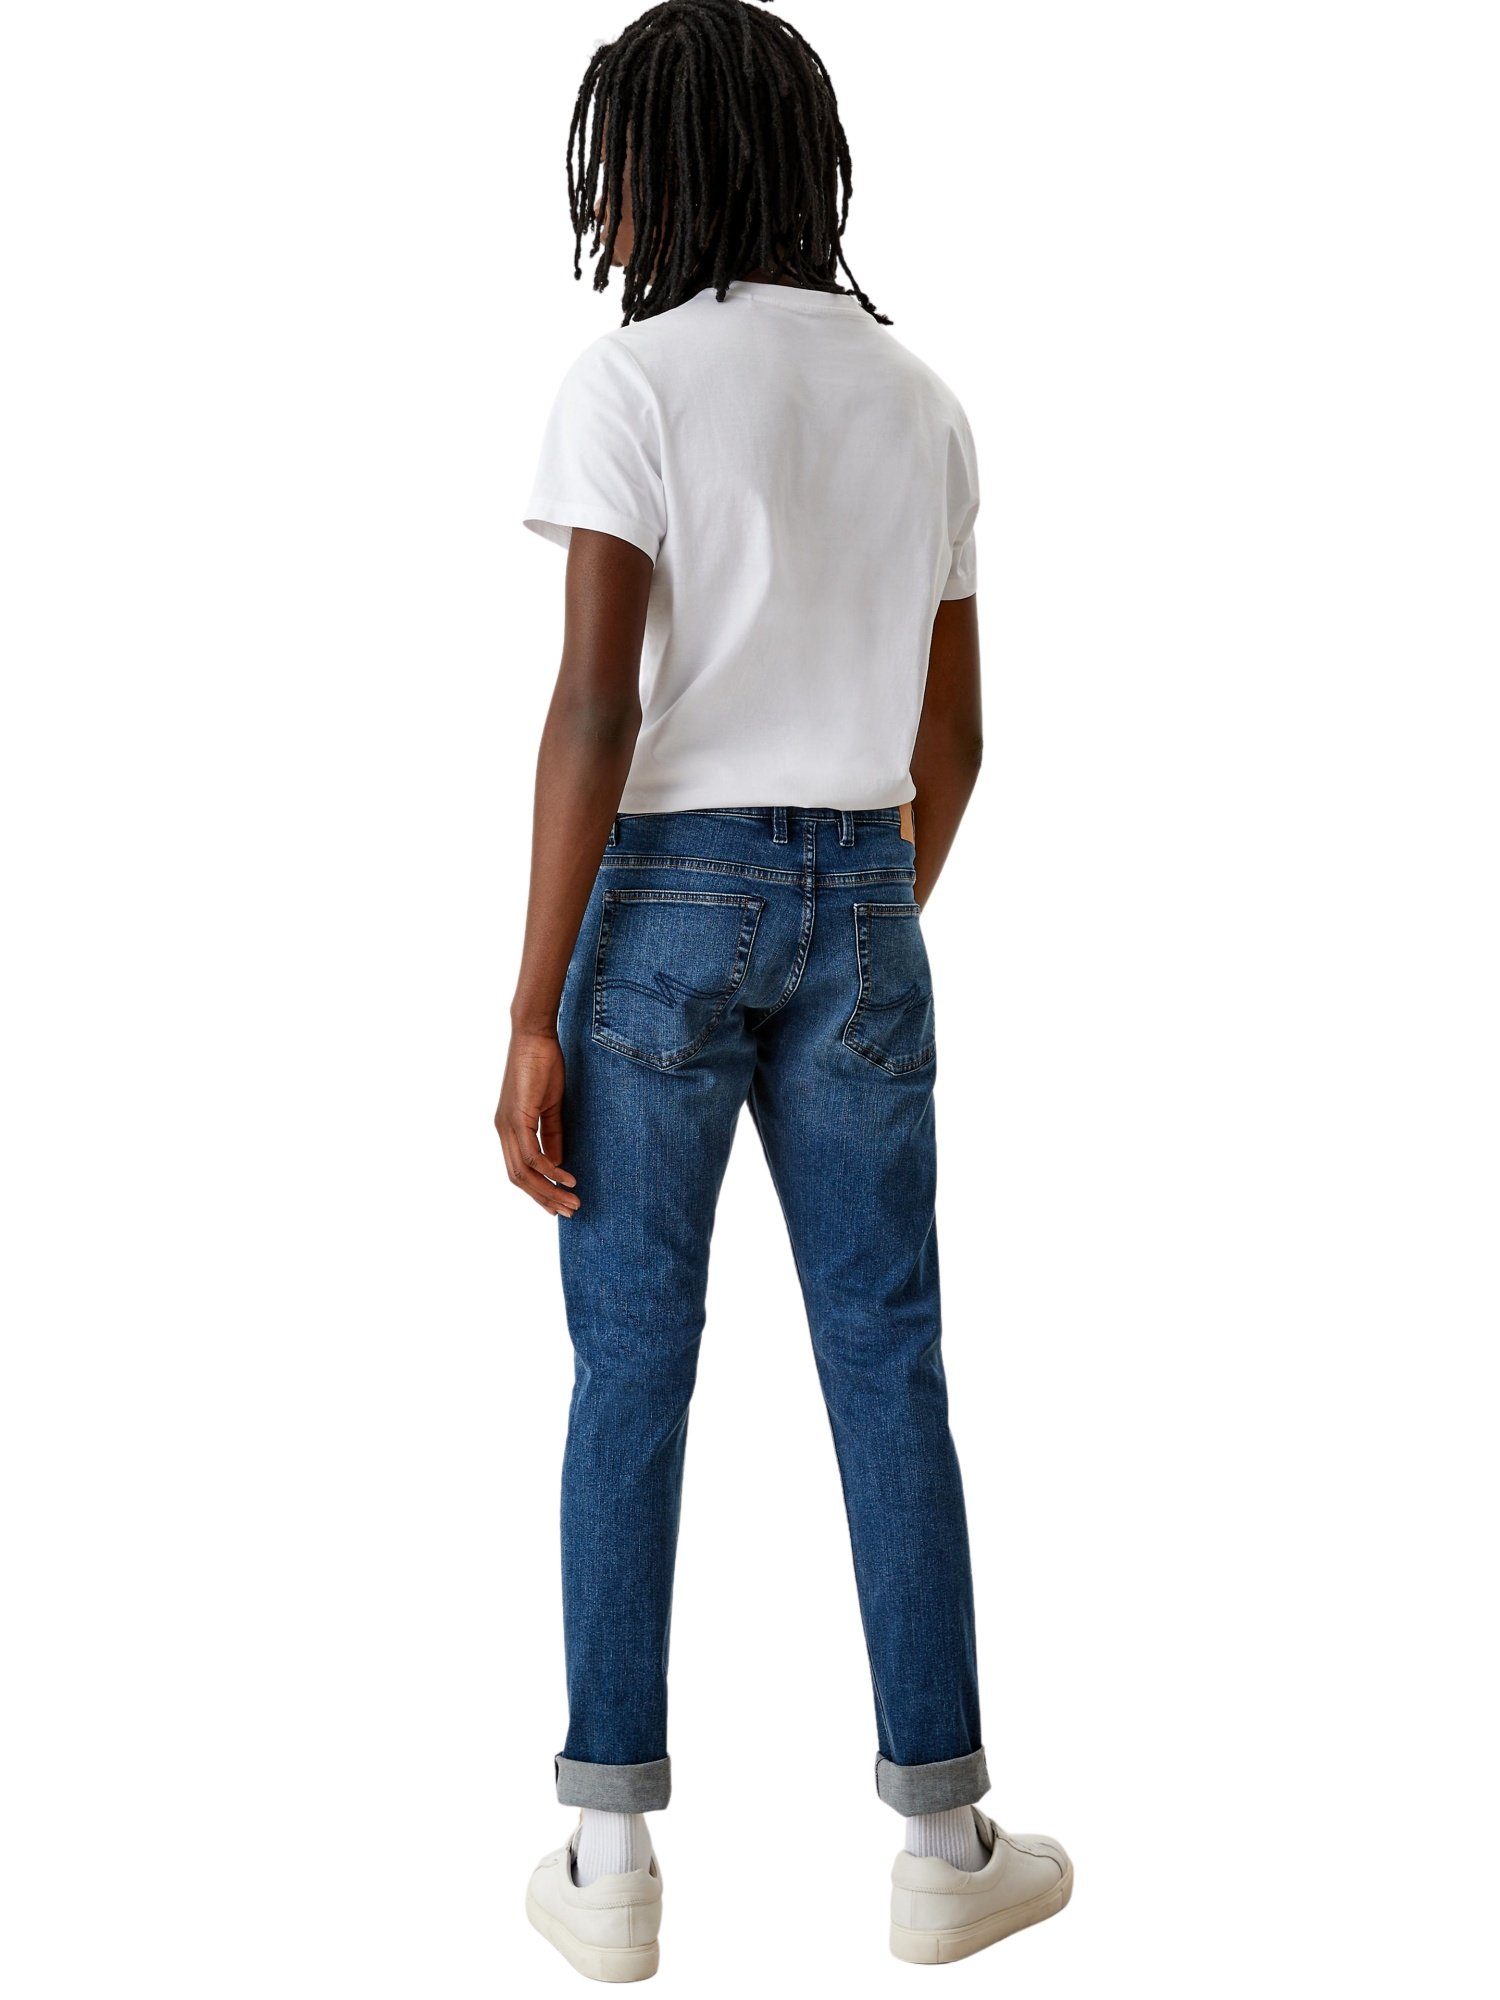 Hose Slim Five-Pocket-Style im 5-Pocket-Jeans s.Oliver Jeans